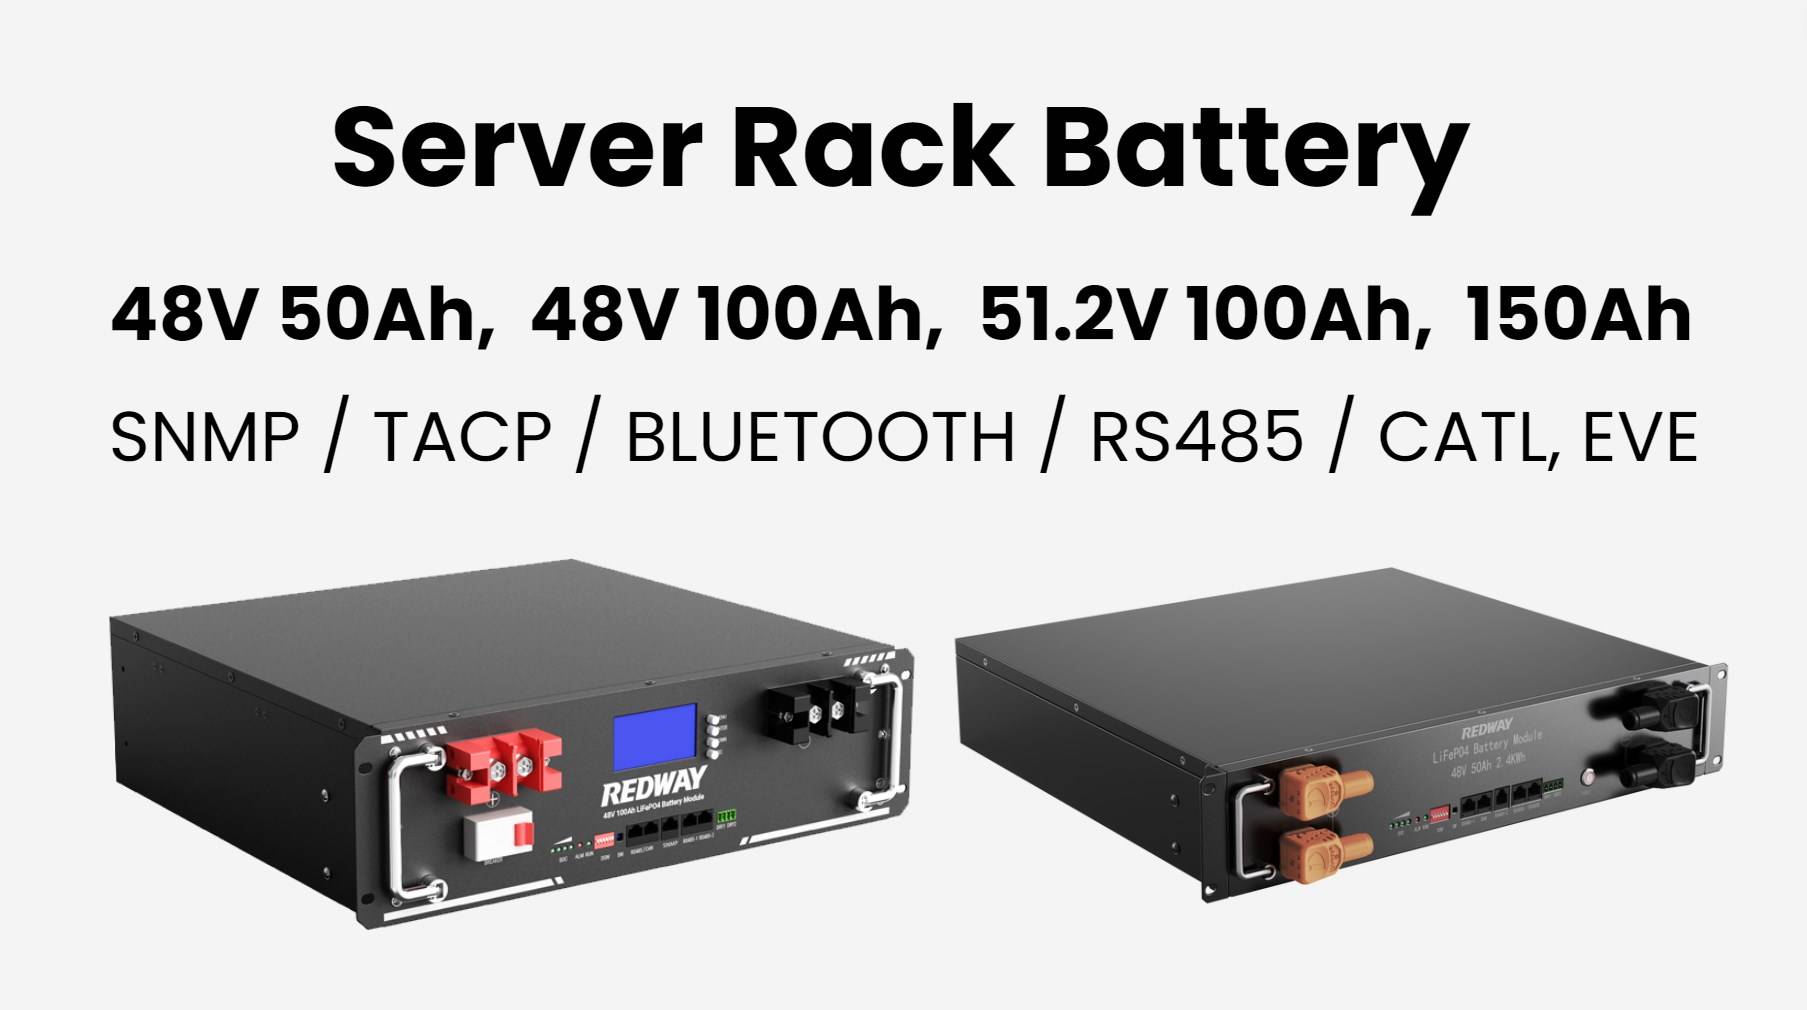 server rack battery factory manufacturer 48v 100ah 48v 50ah 48v 150ah 51.2v 50ah 100ah redway